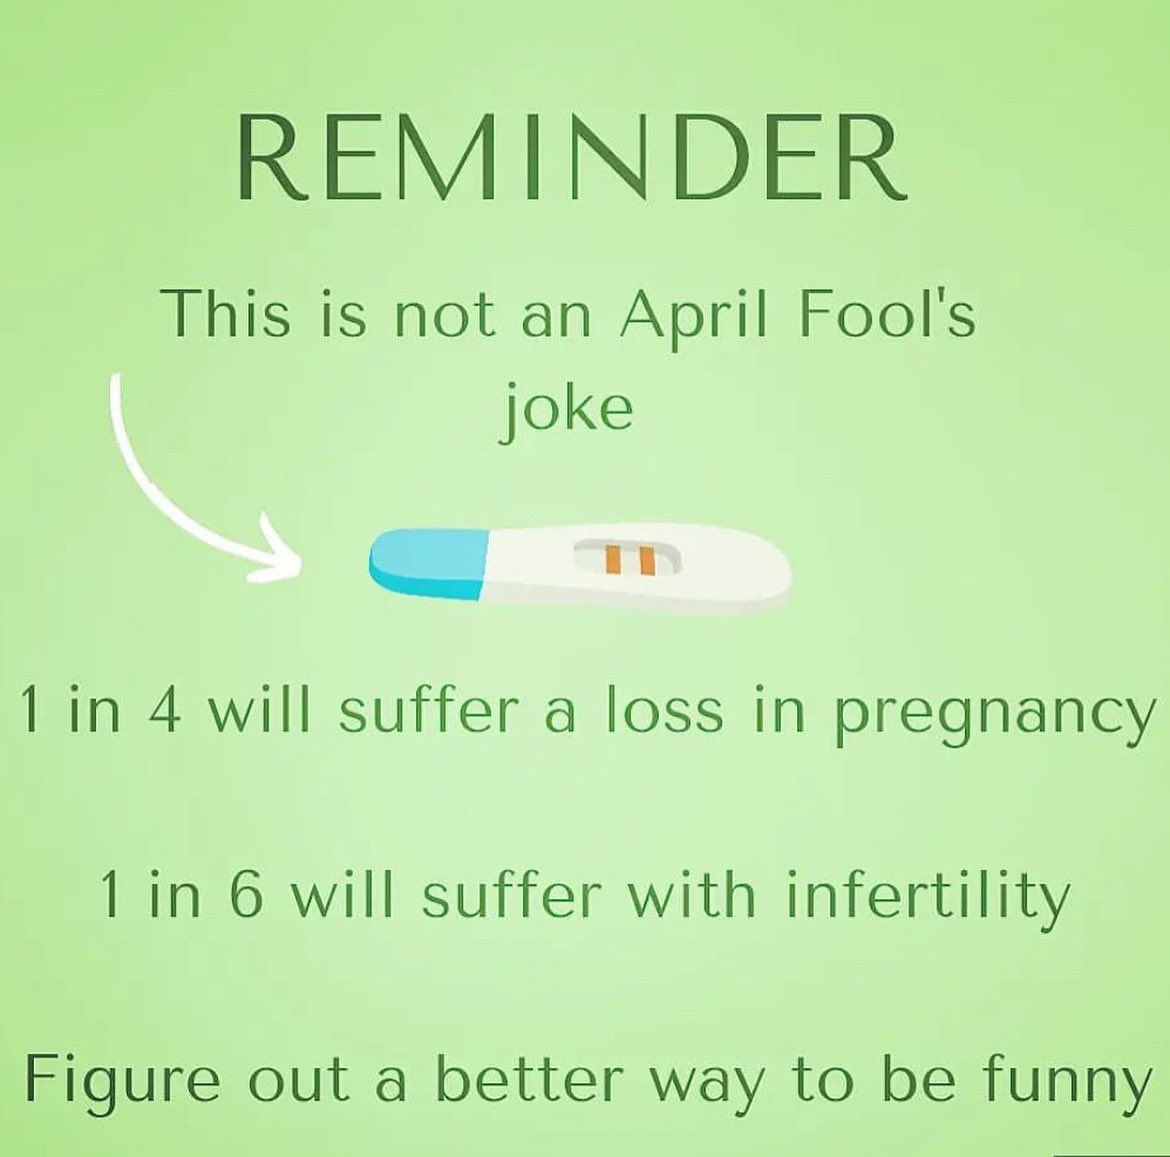 Just a PSA. #infertilityawareness